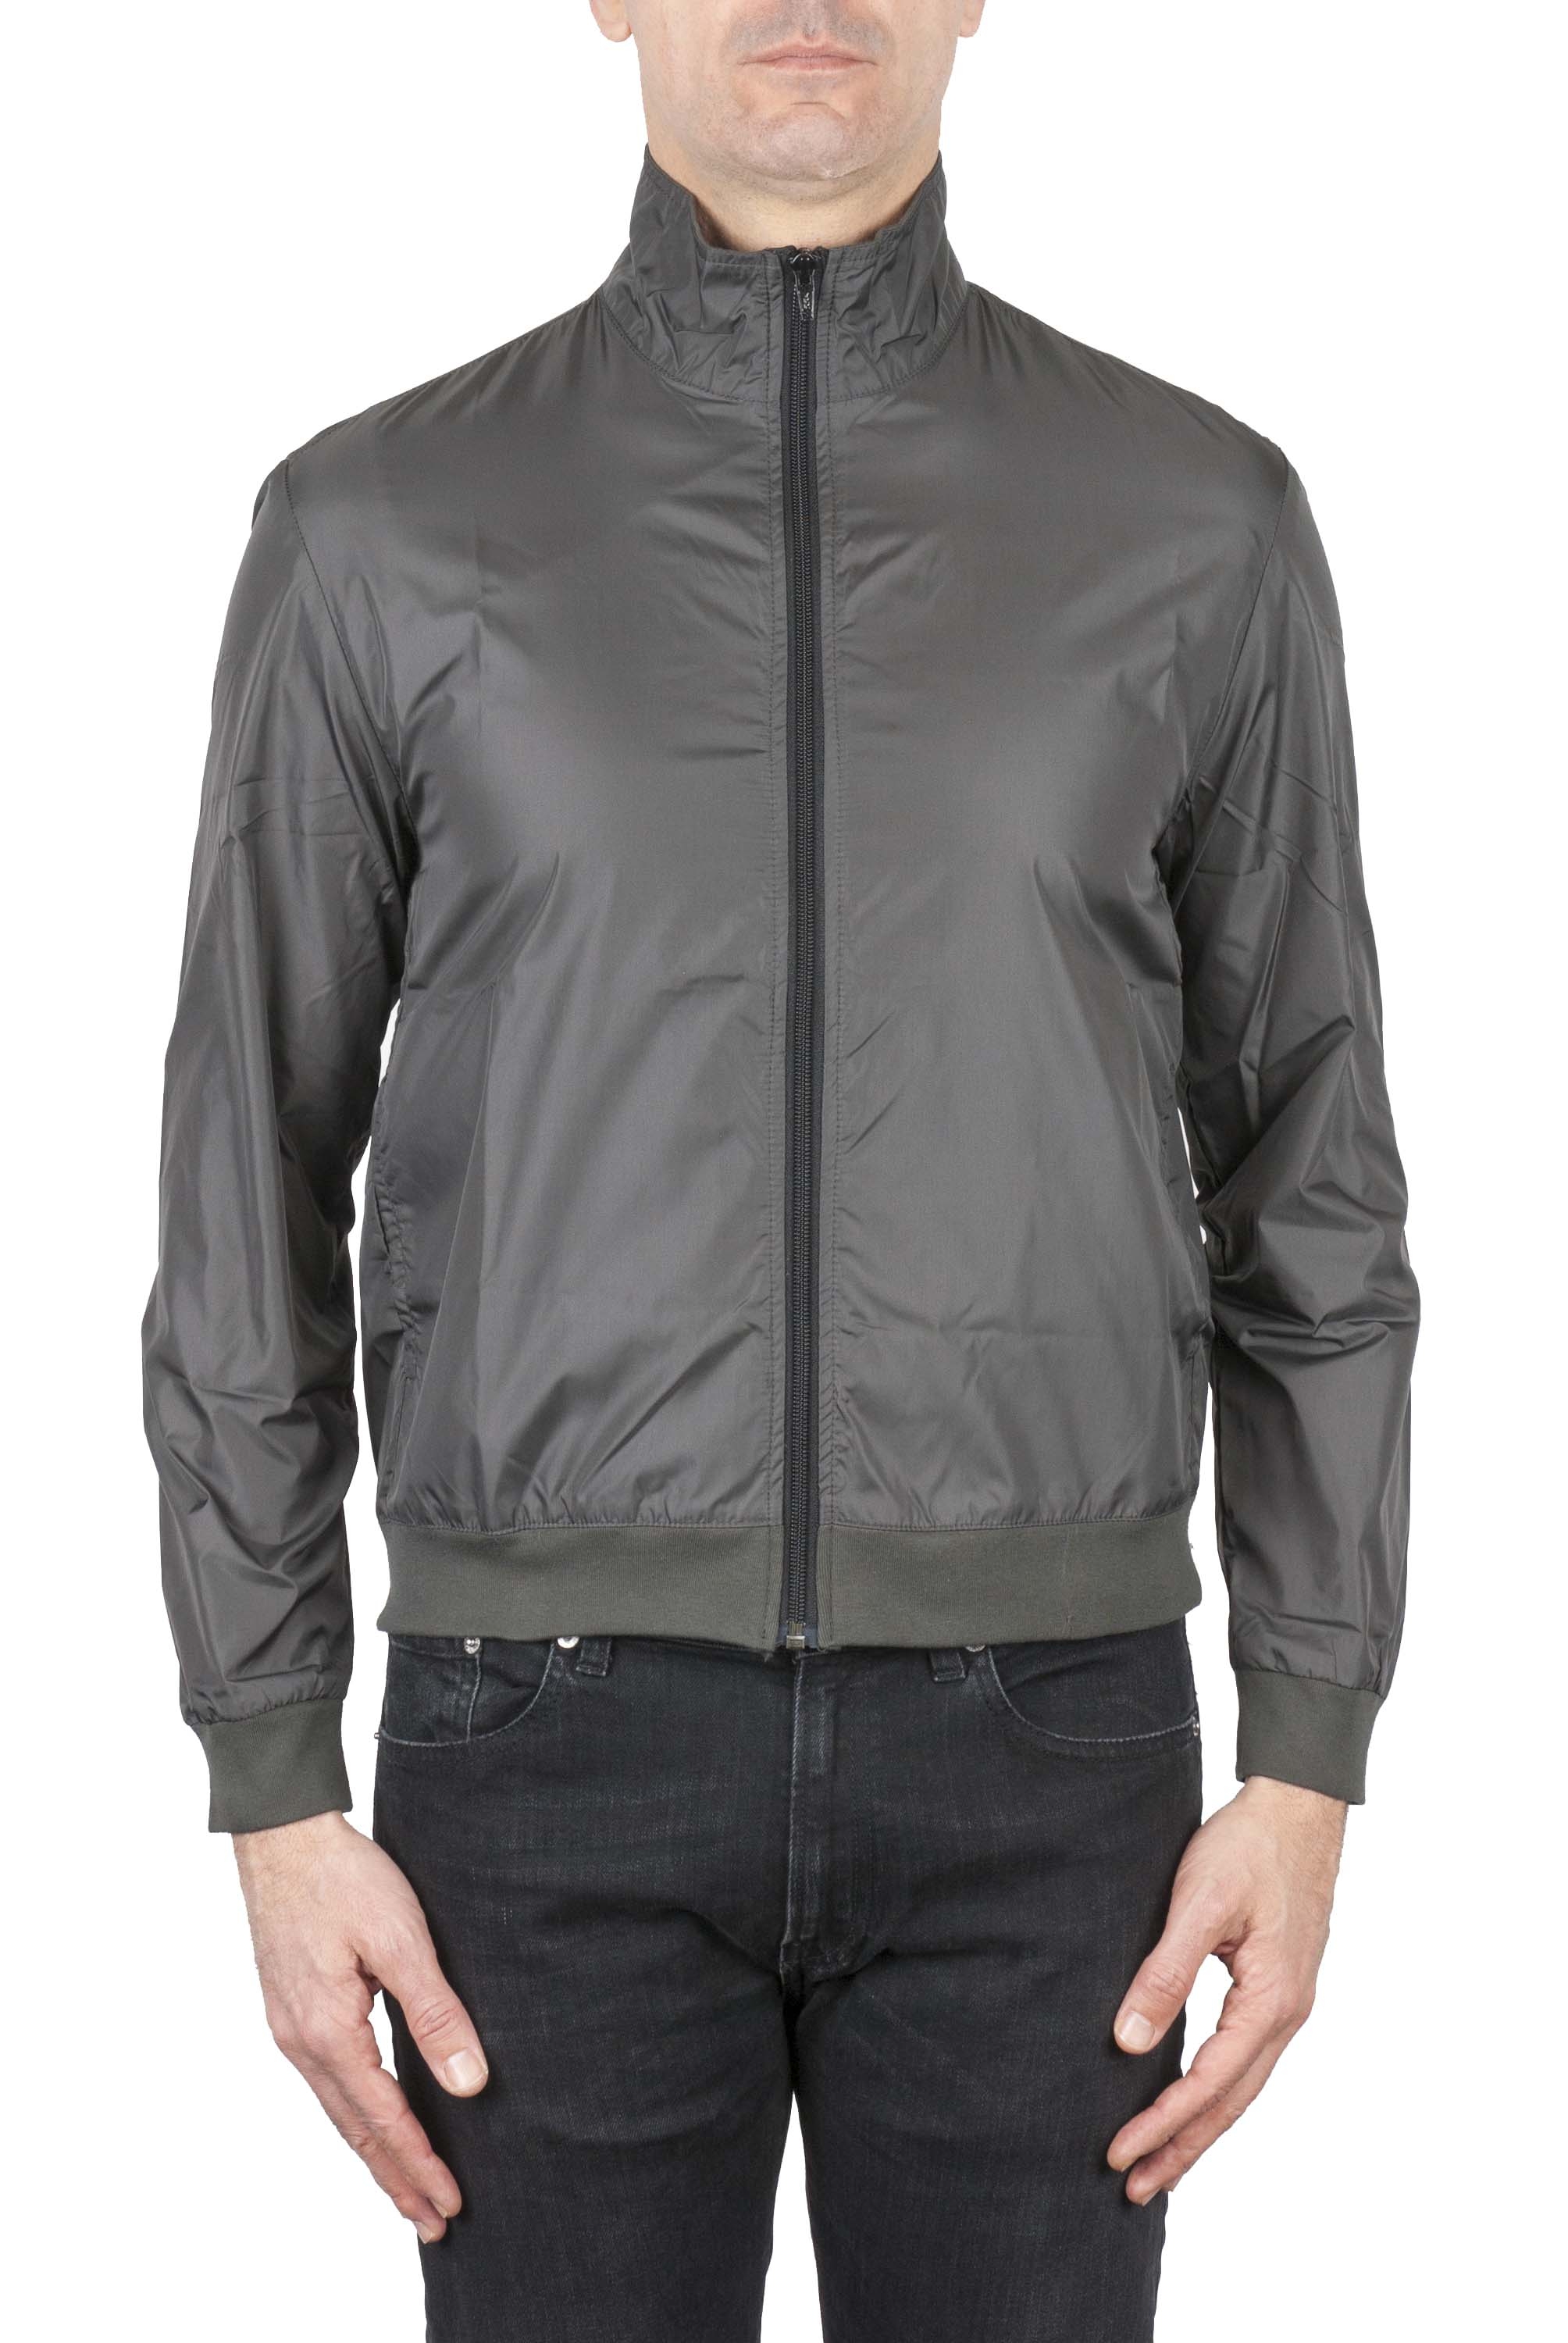 SBU 01110 Hi-tech windbreaker jacket 01